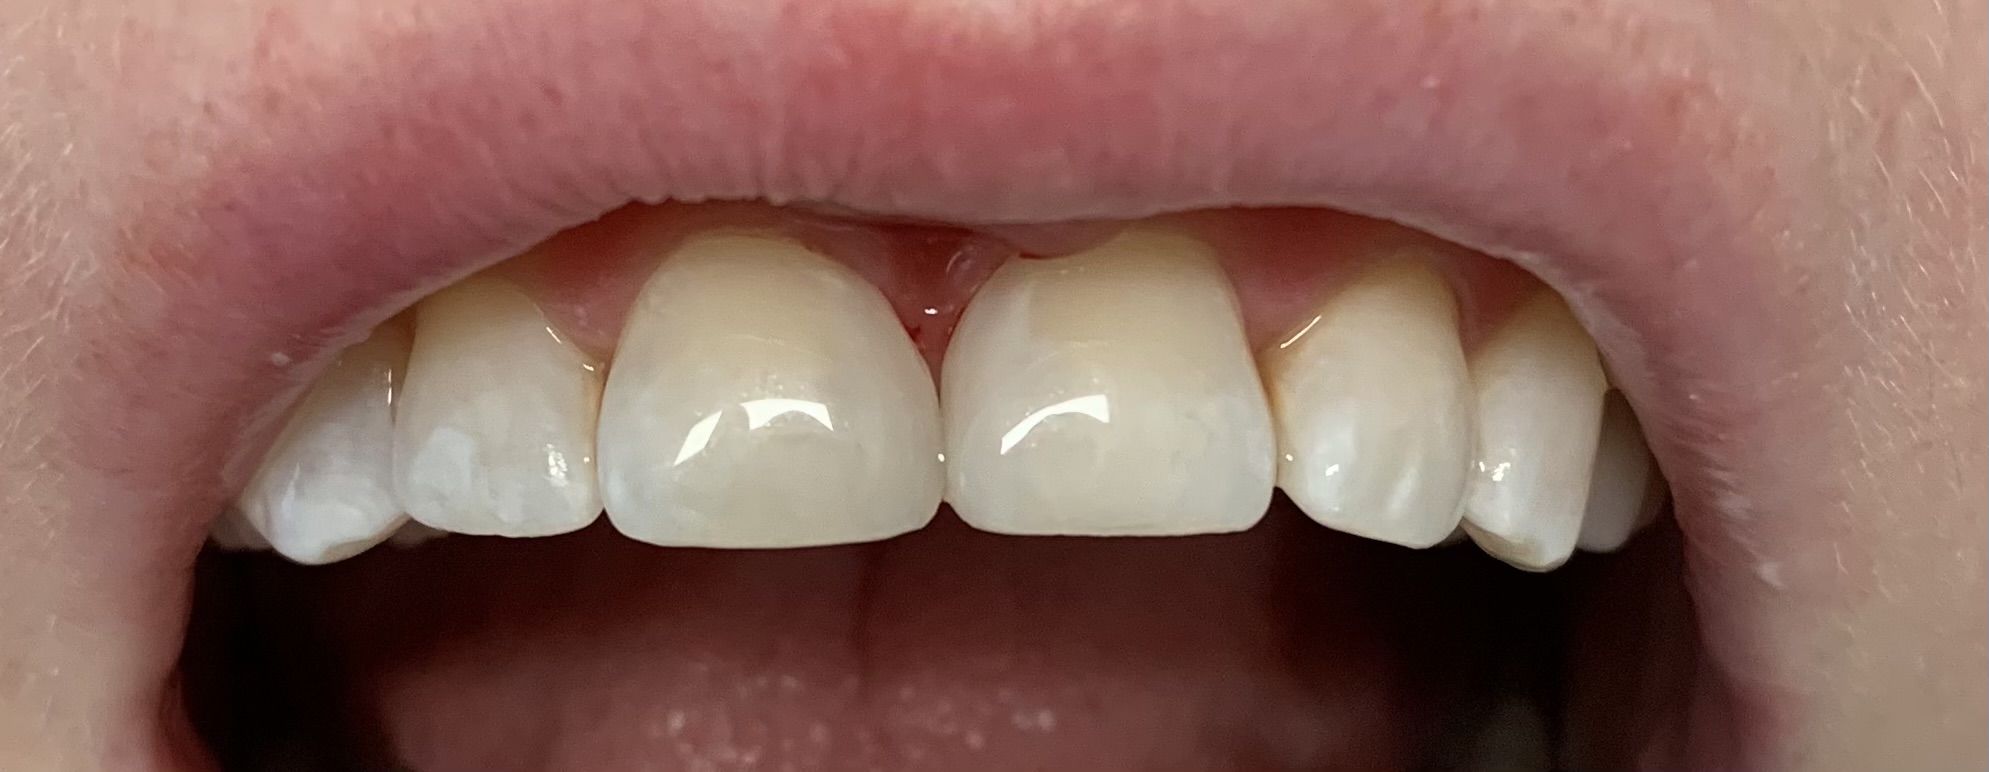 Zęby po wykonanym zabiegu